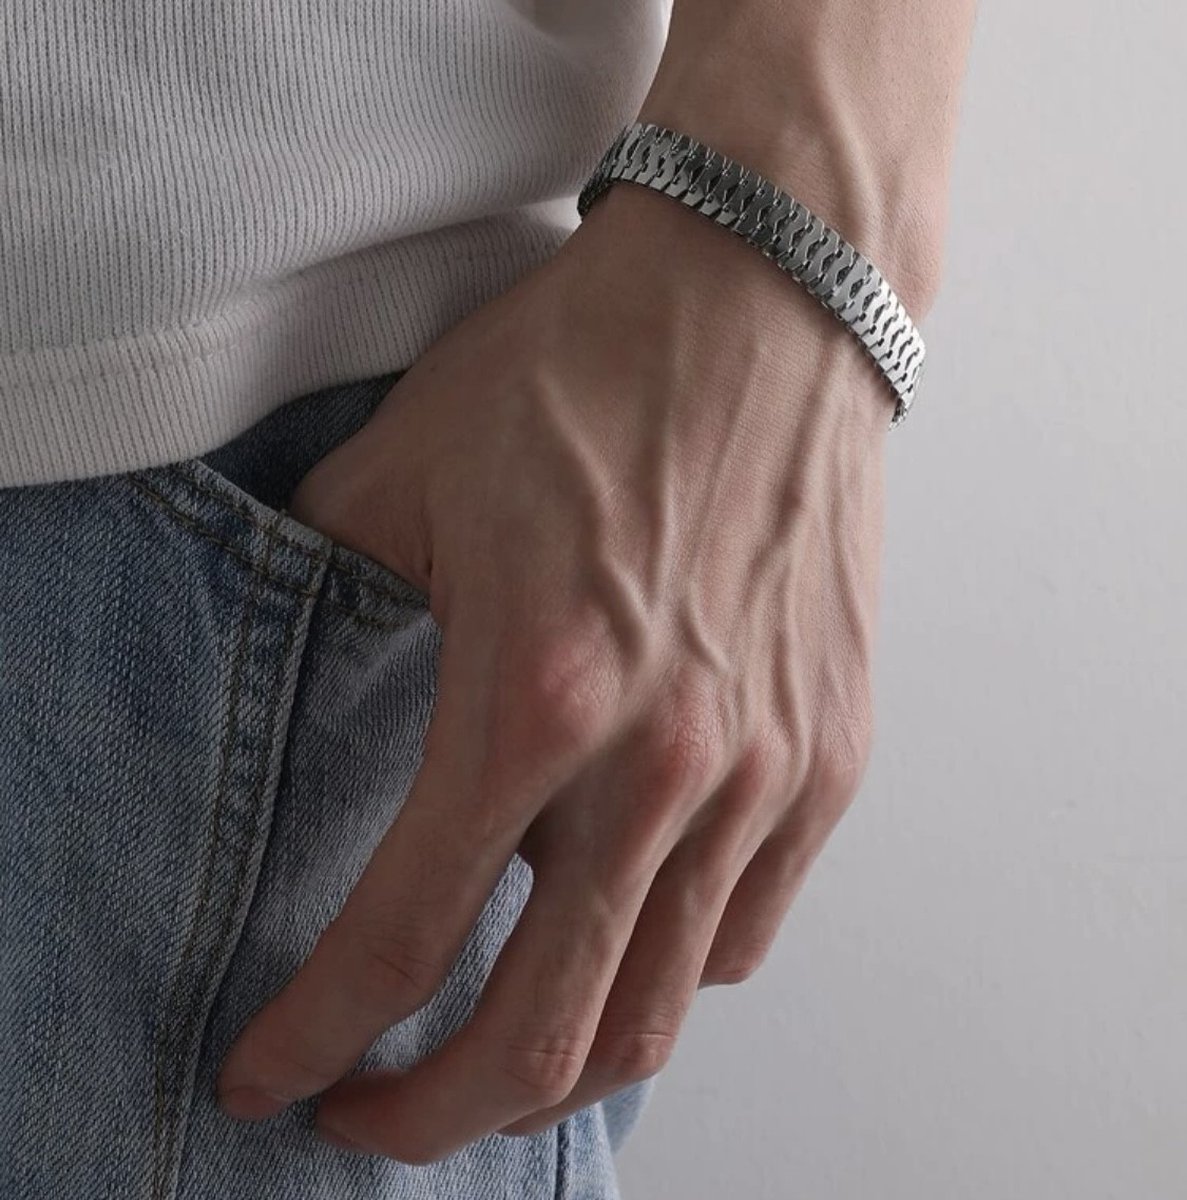 Cuban Link Heren Armband |Chain | Zilver Kleurig |6 mm | Mannen Armband | Armbanden | Mannen Cadeautjes | Cadeau voor Man | Armband Mannen | Armband Heren | Heren Armband | Valentijn | Valentijnscadeau